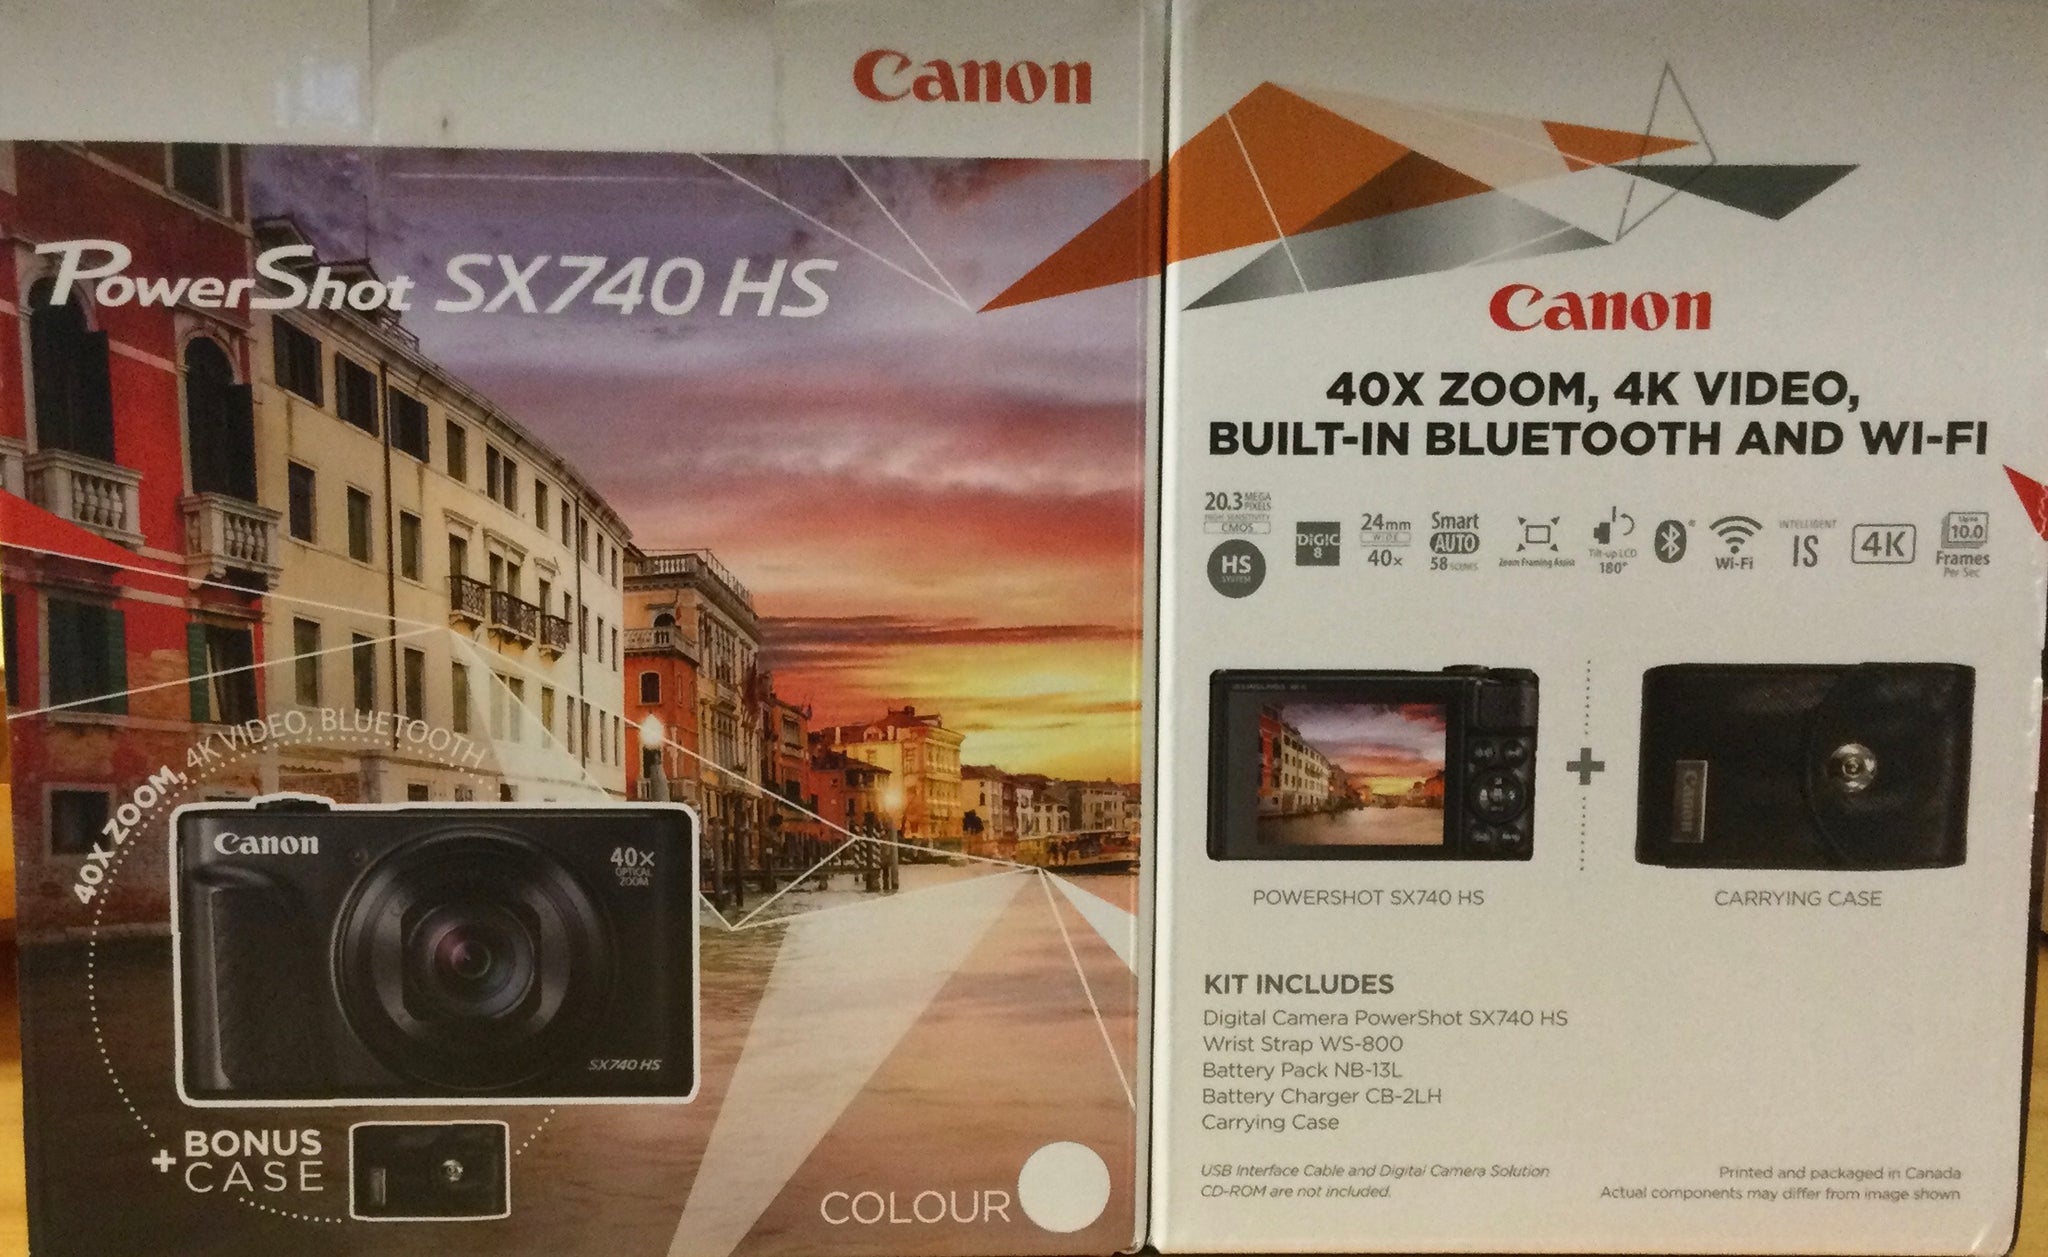 Canon PowerShop SX740 HS camera